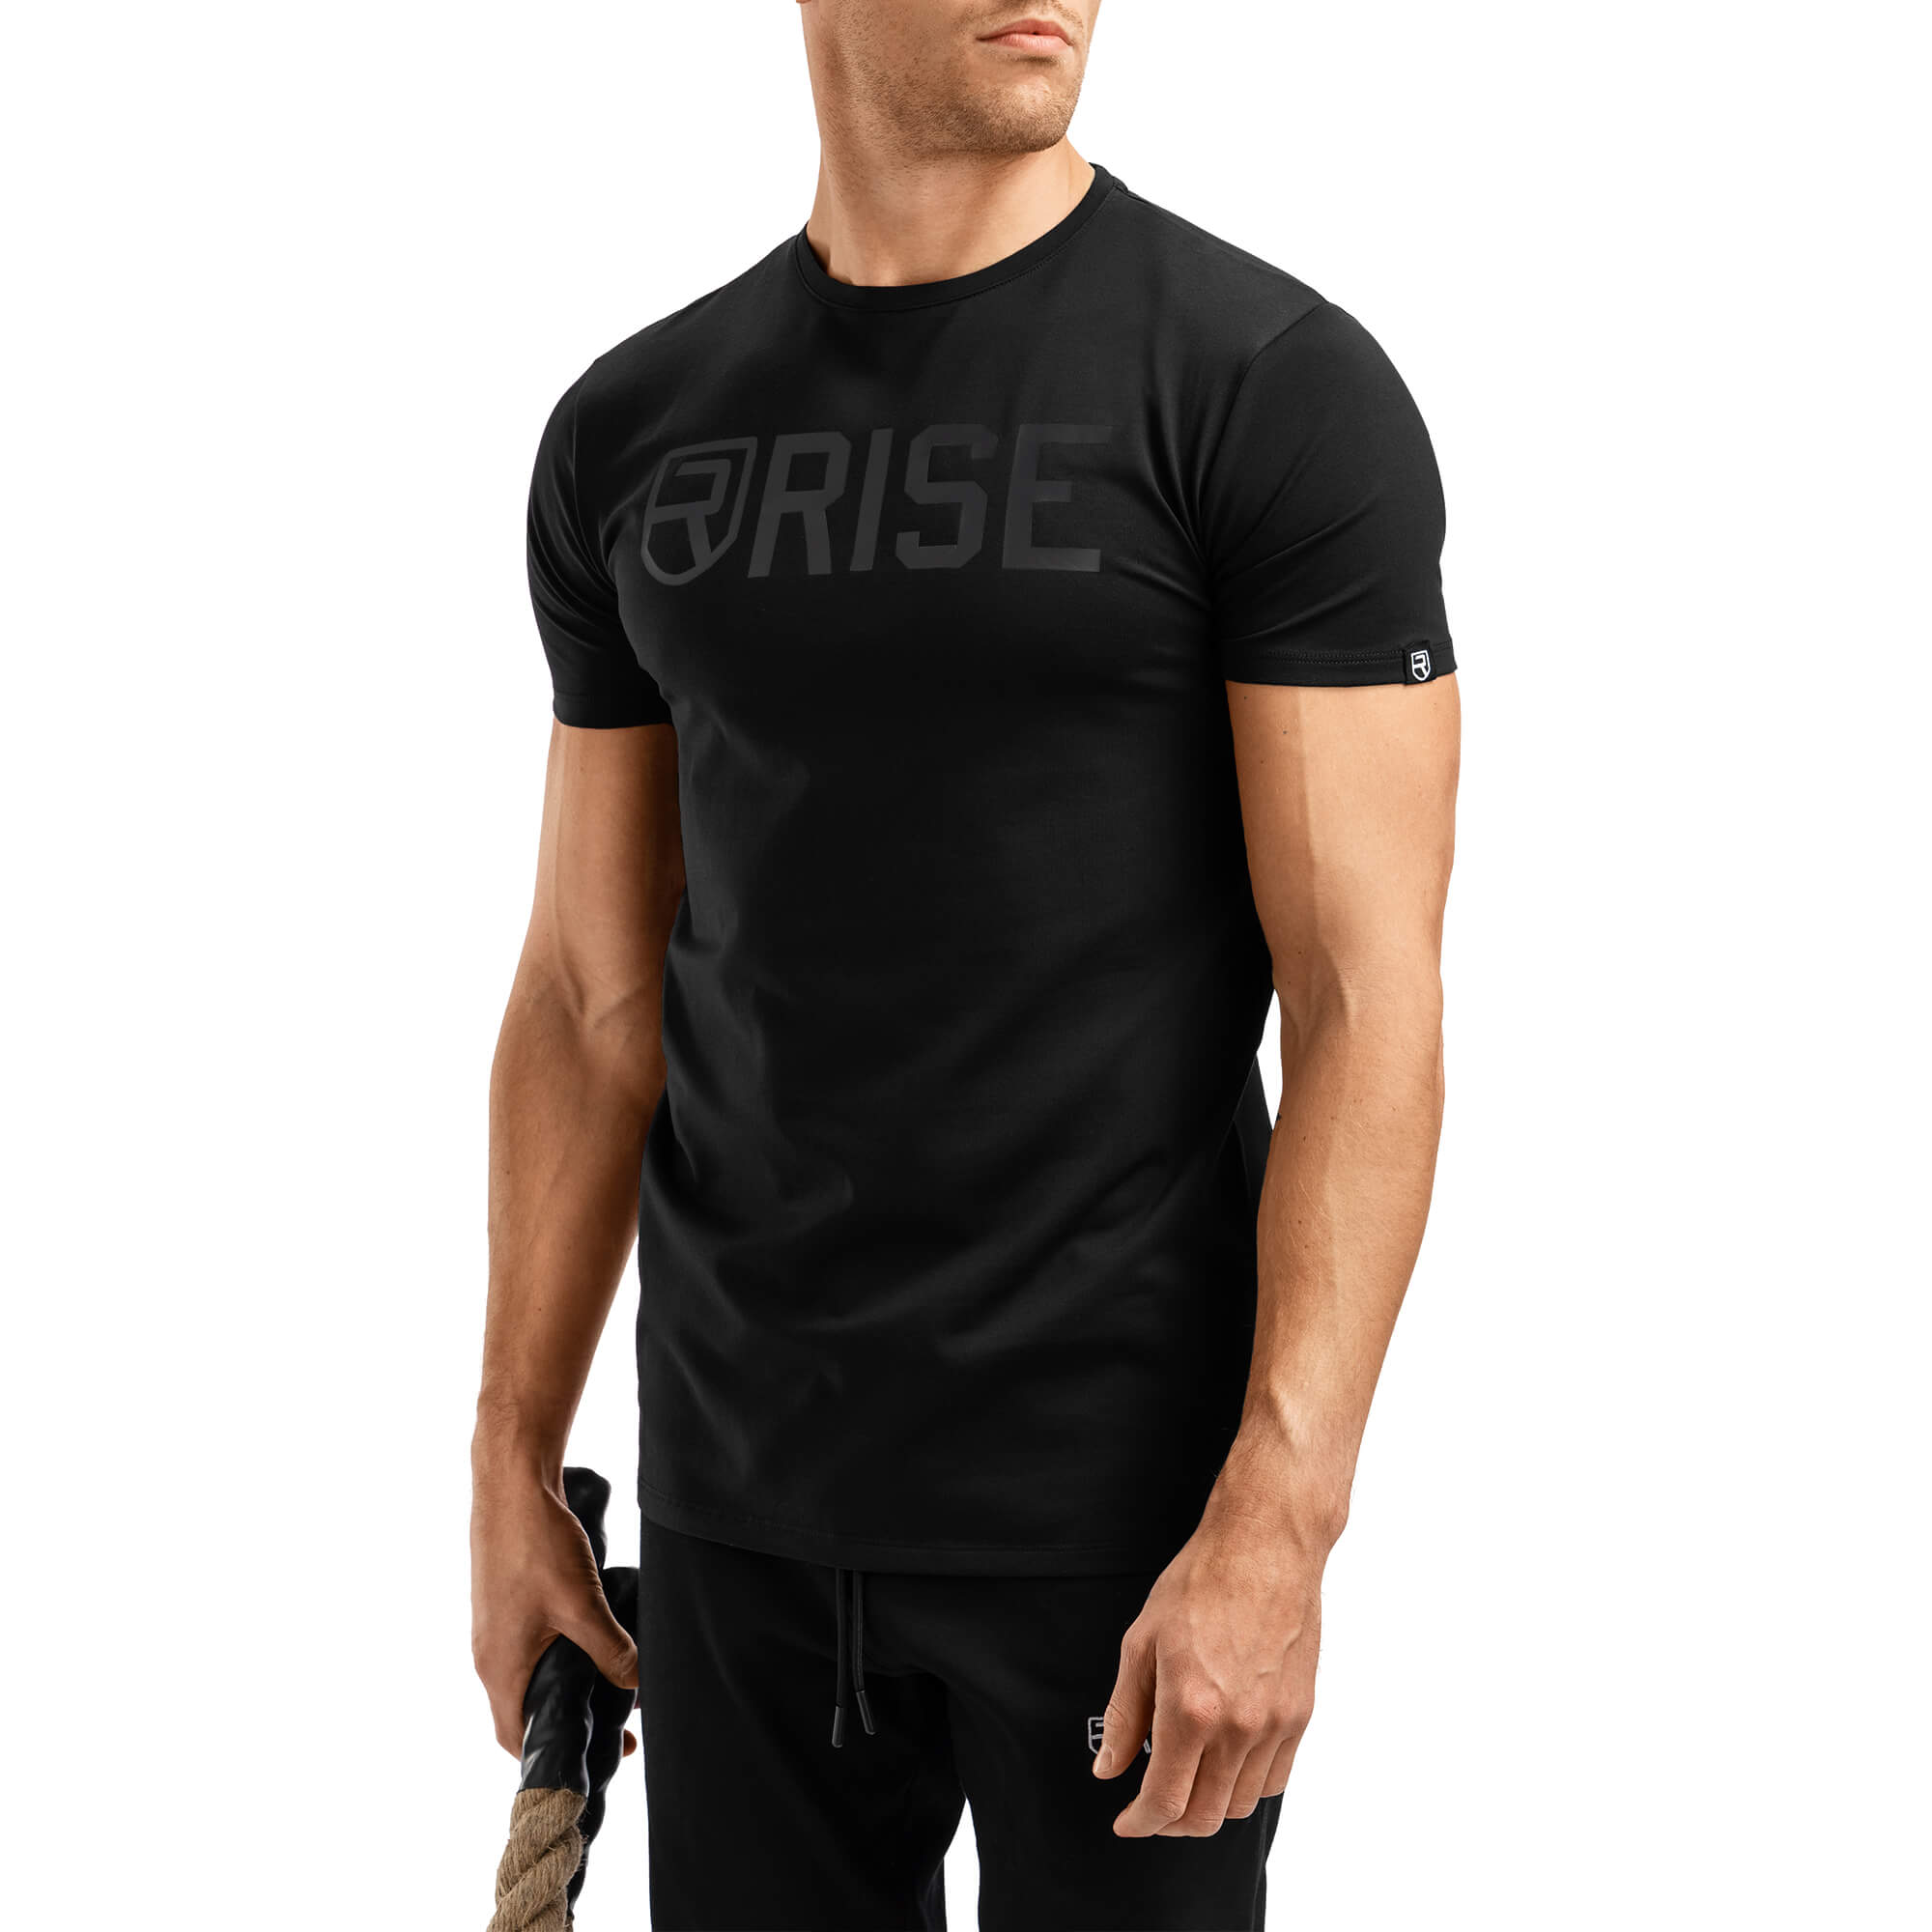 Signature T-Shirt 2.0 - Black on Black